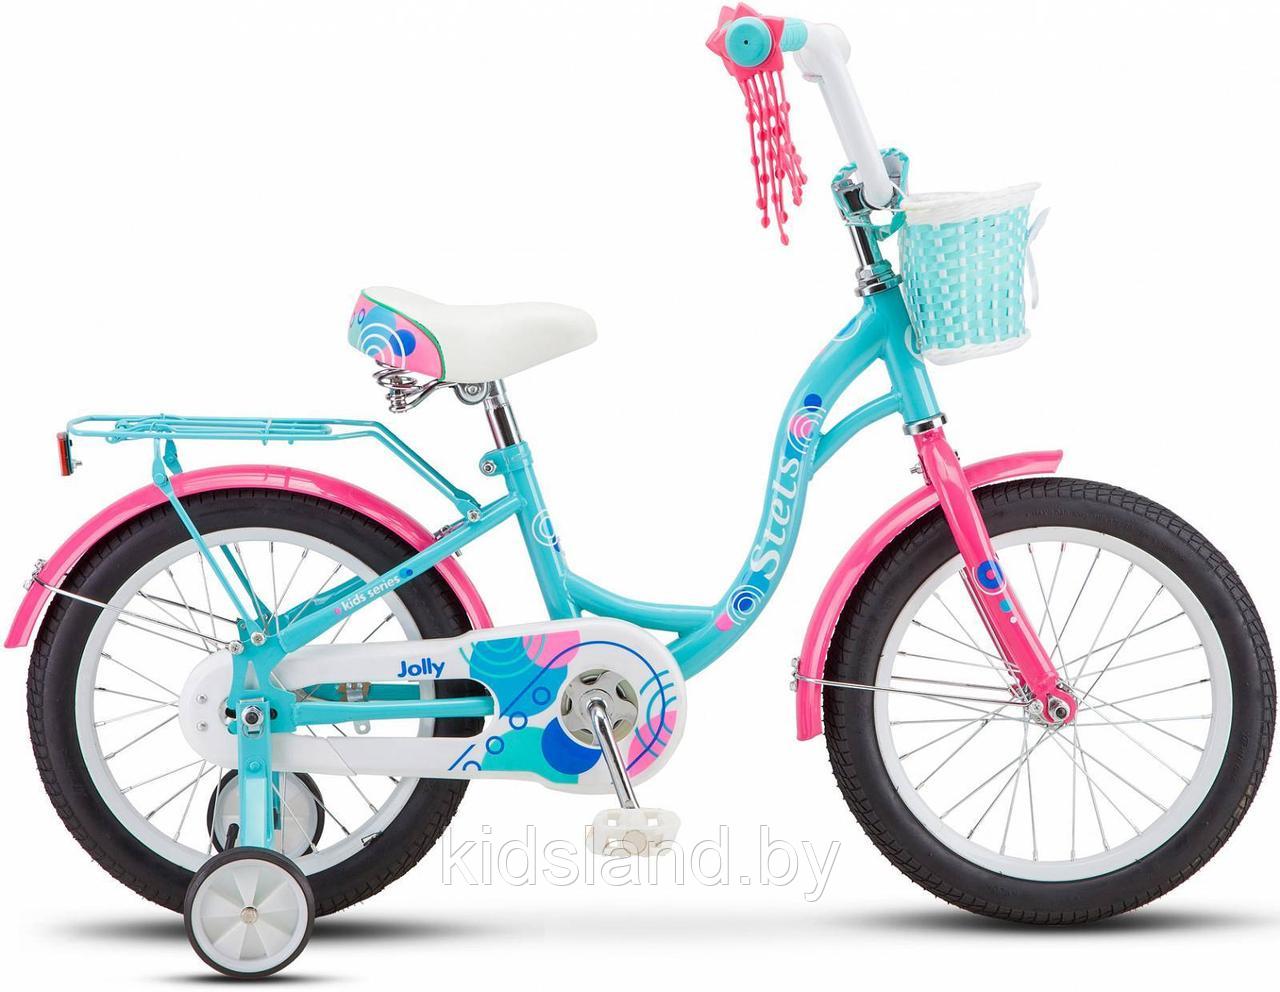 Детский велосипед Stels Jolly 16" (голубой/розовый)